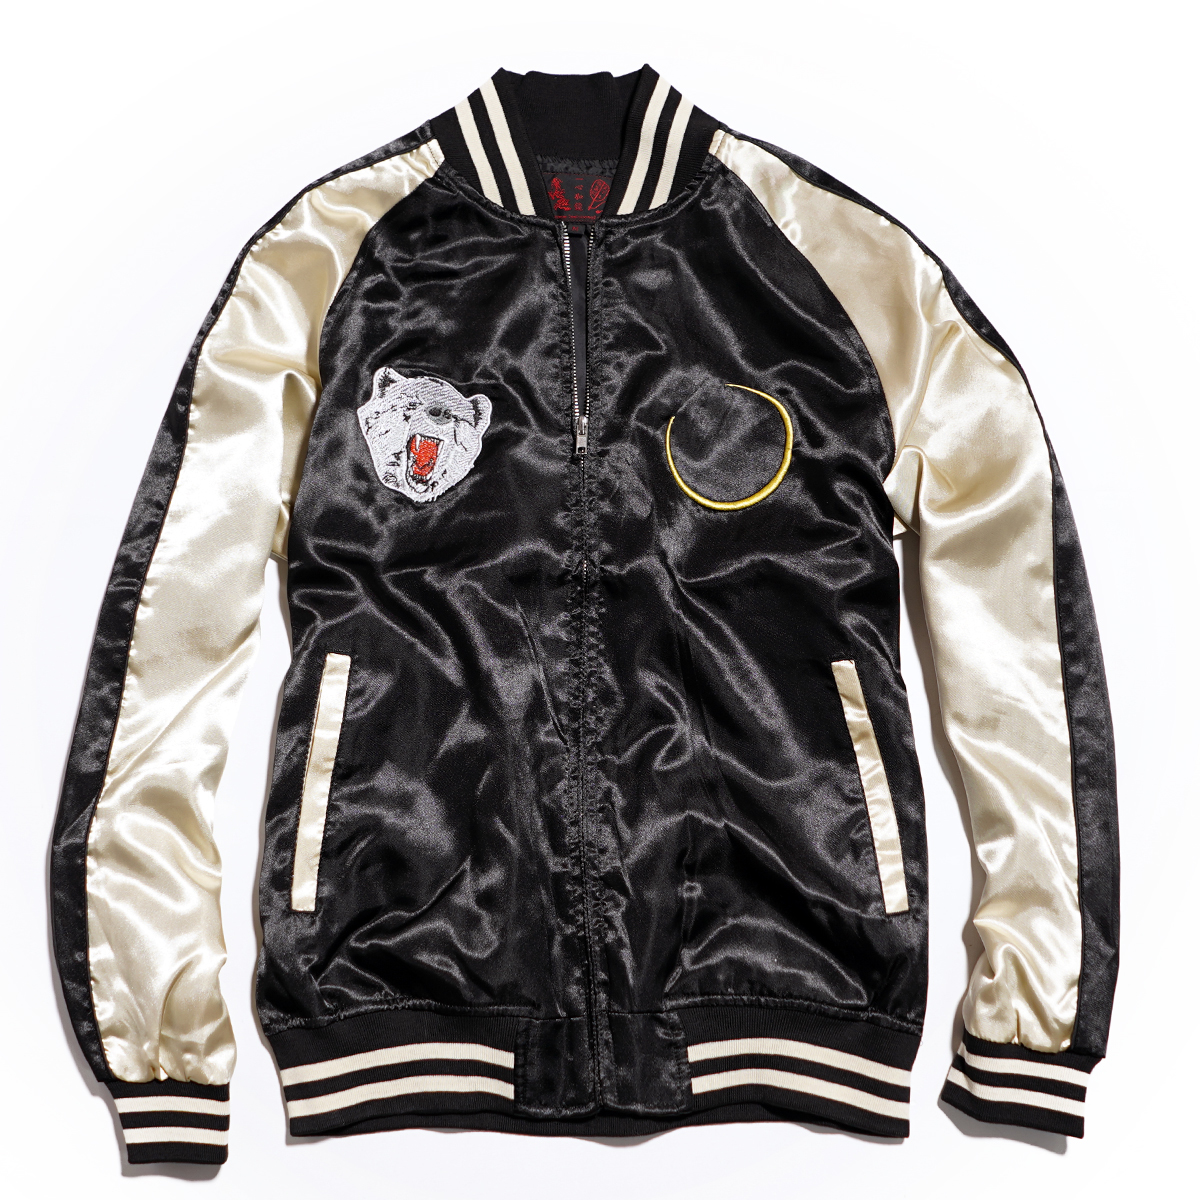 【新品】スカジャン スーベニアジャケット ■ 5Lサイズ / ブラック黒 熊 ■ 和柄 刺繍 サテン SKAb960kの画像1